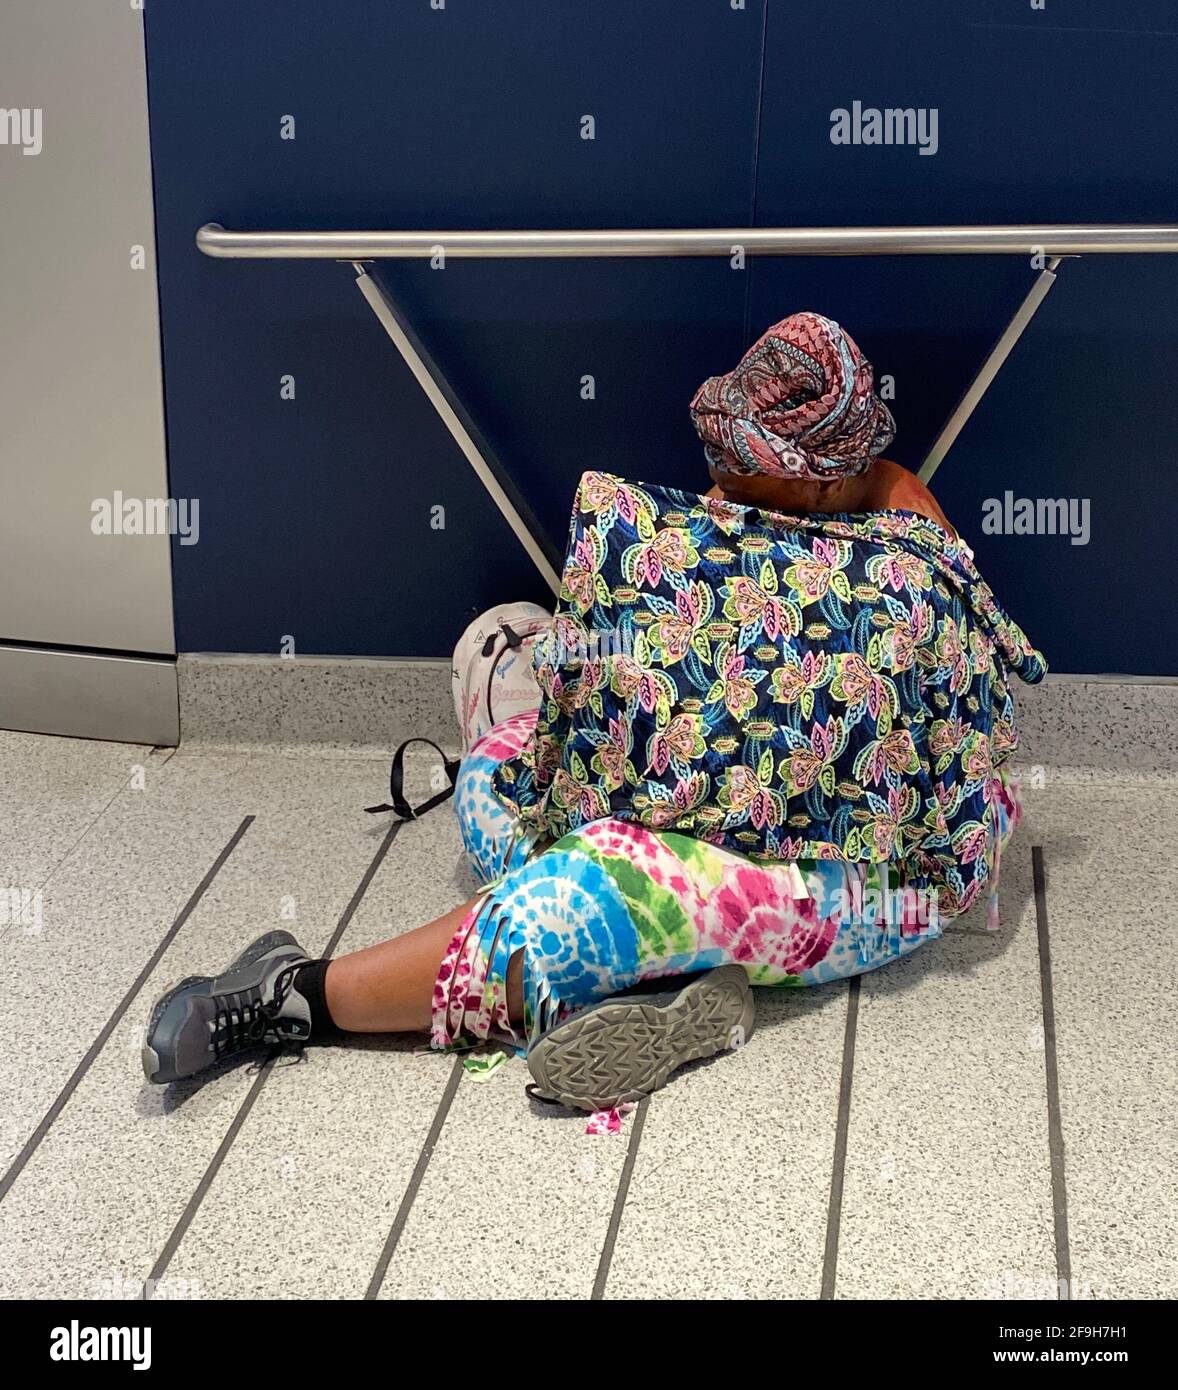 Eine scheinbar obdachlose Frau in farbenfrohem Kleid sitzt an einer Auffahrt zur neuen Moynihan Train Hall am Penn Station in New York City. Stockfoto